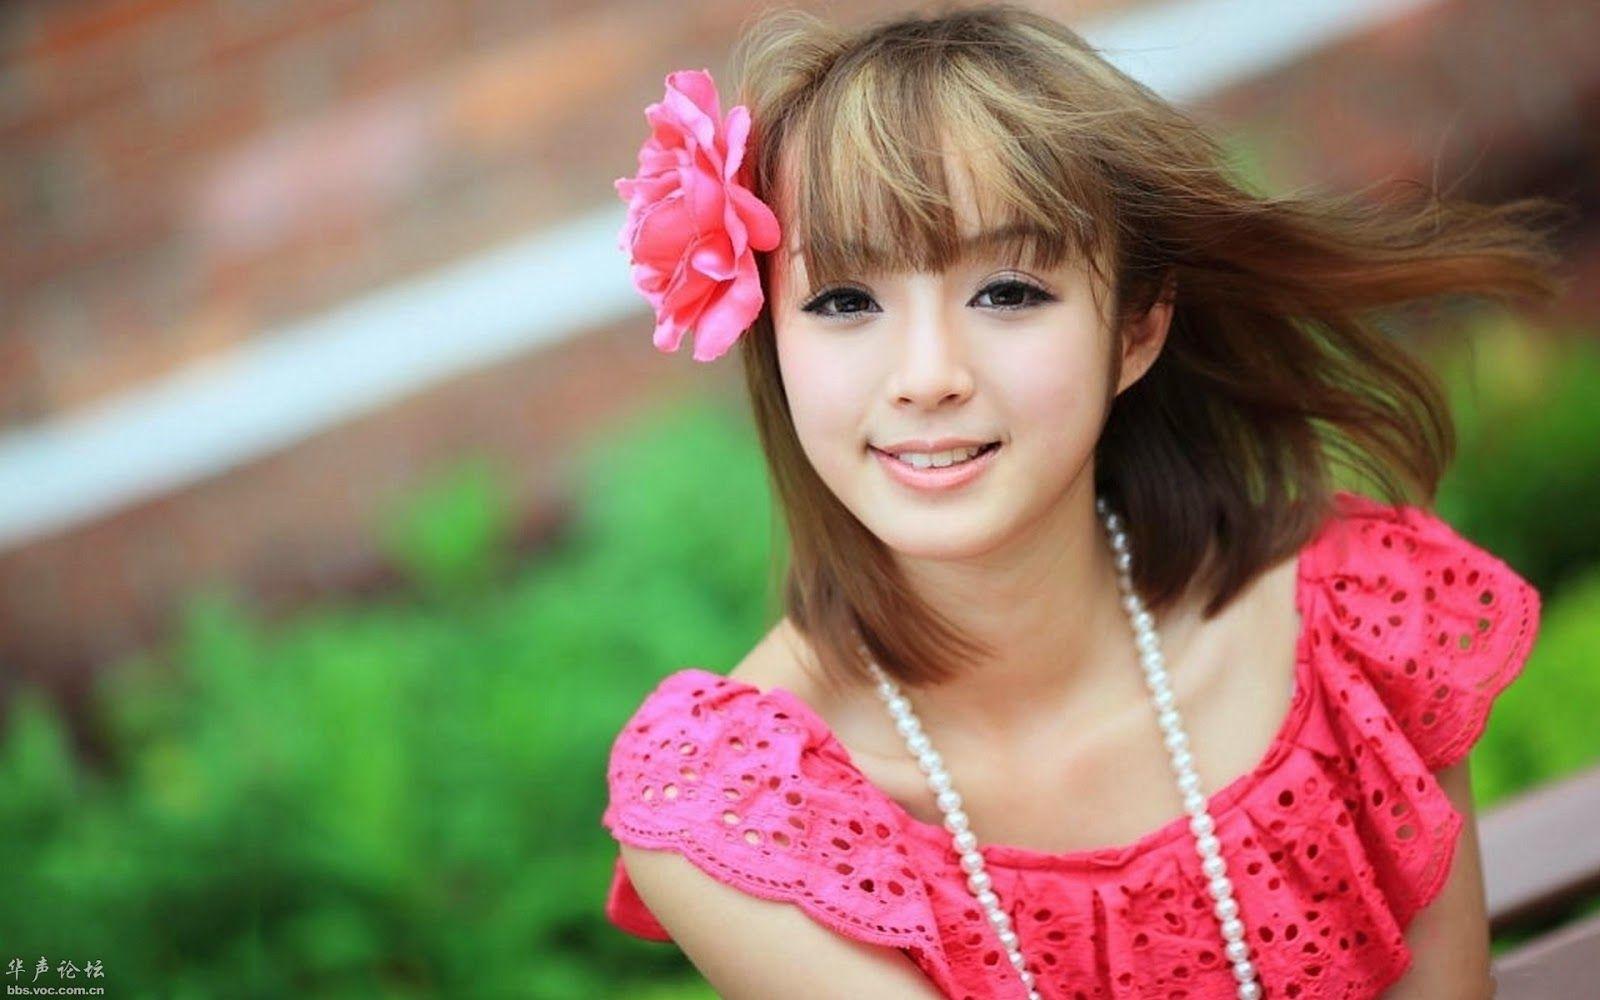 Beautiful Chinese Girls Wallpaper Free Download. Most beautiful